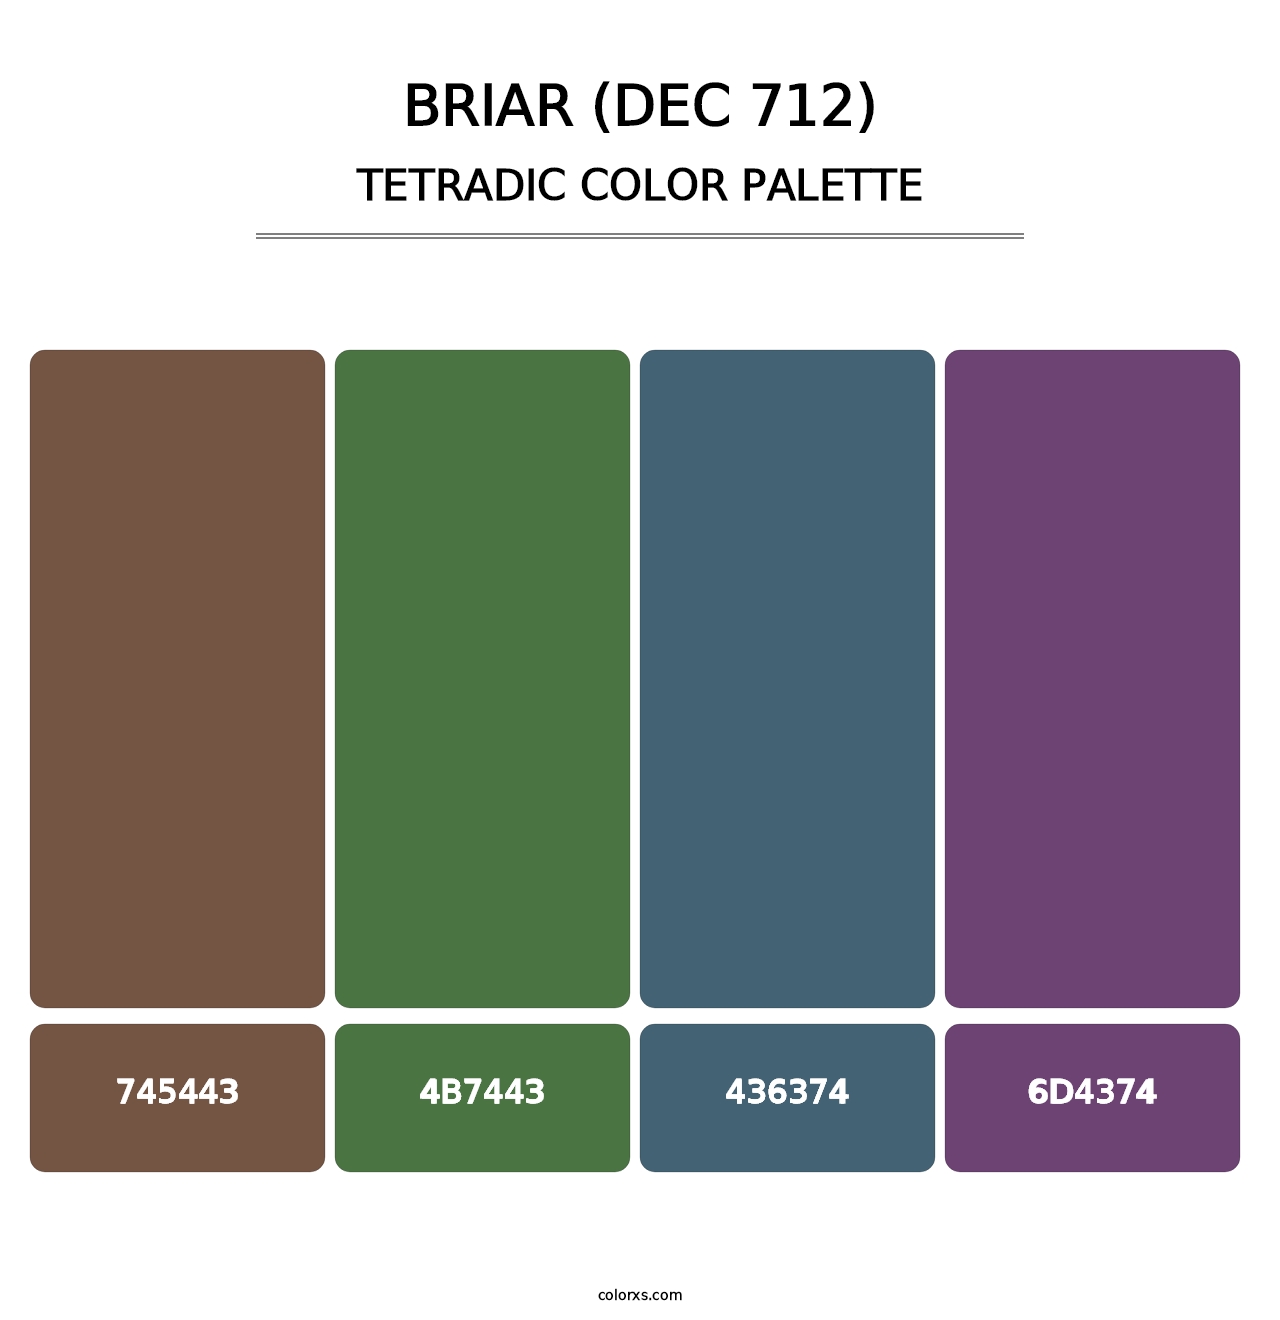 Briar (DEC 712) - Tetradic Color Palette